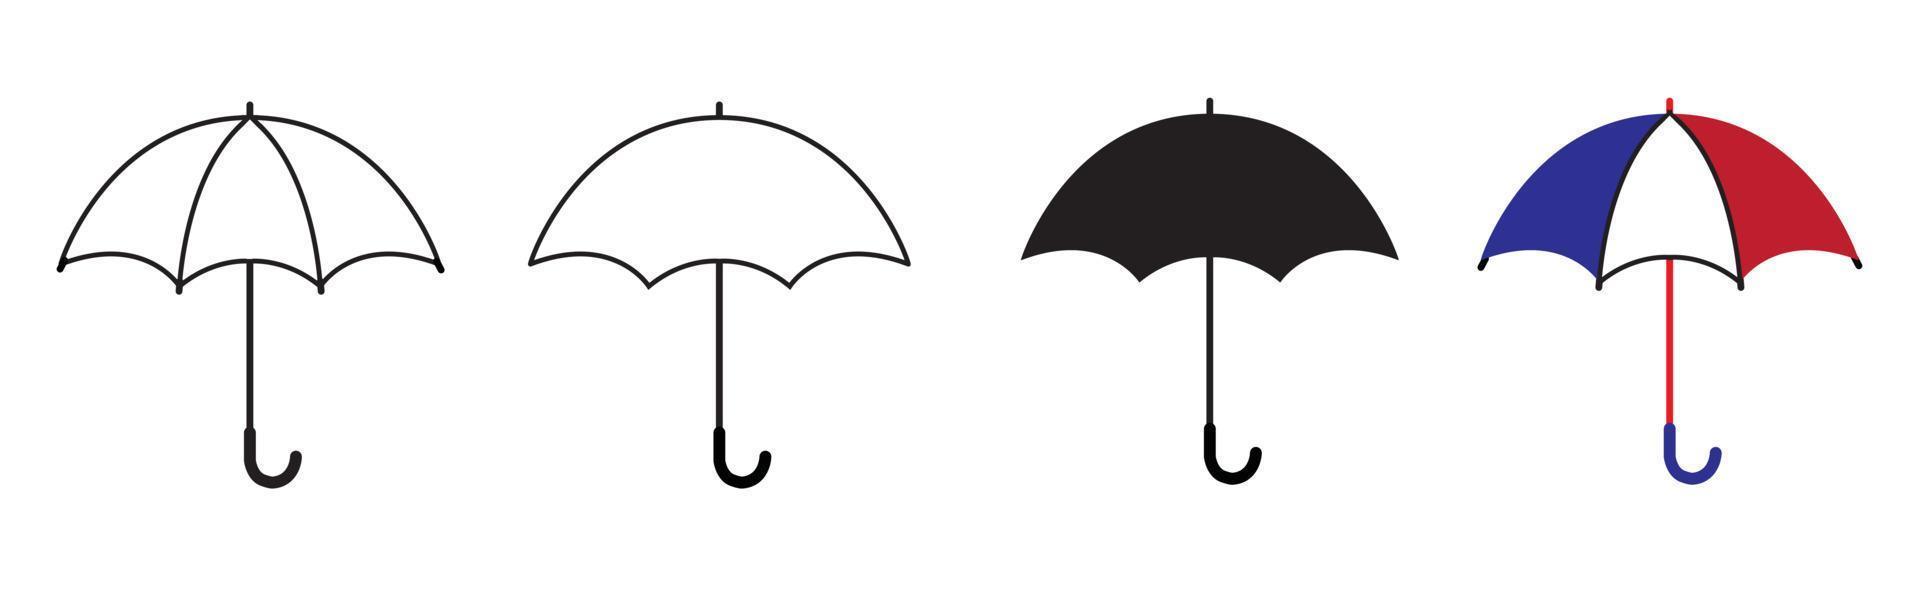 insieme dell'icona dell'ombrello. illustrazione vettoriale